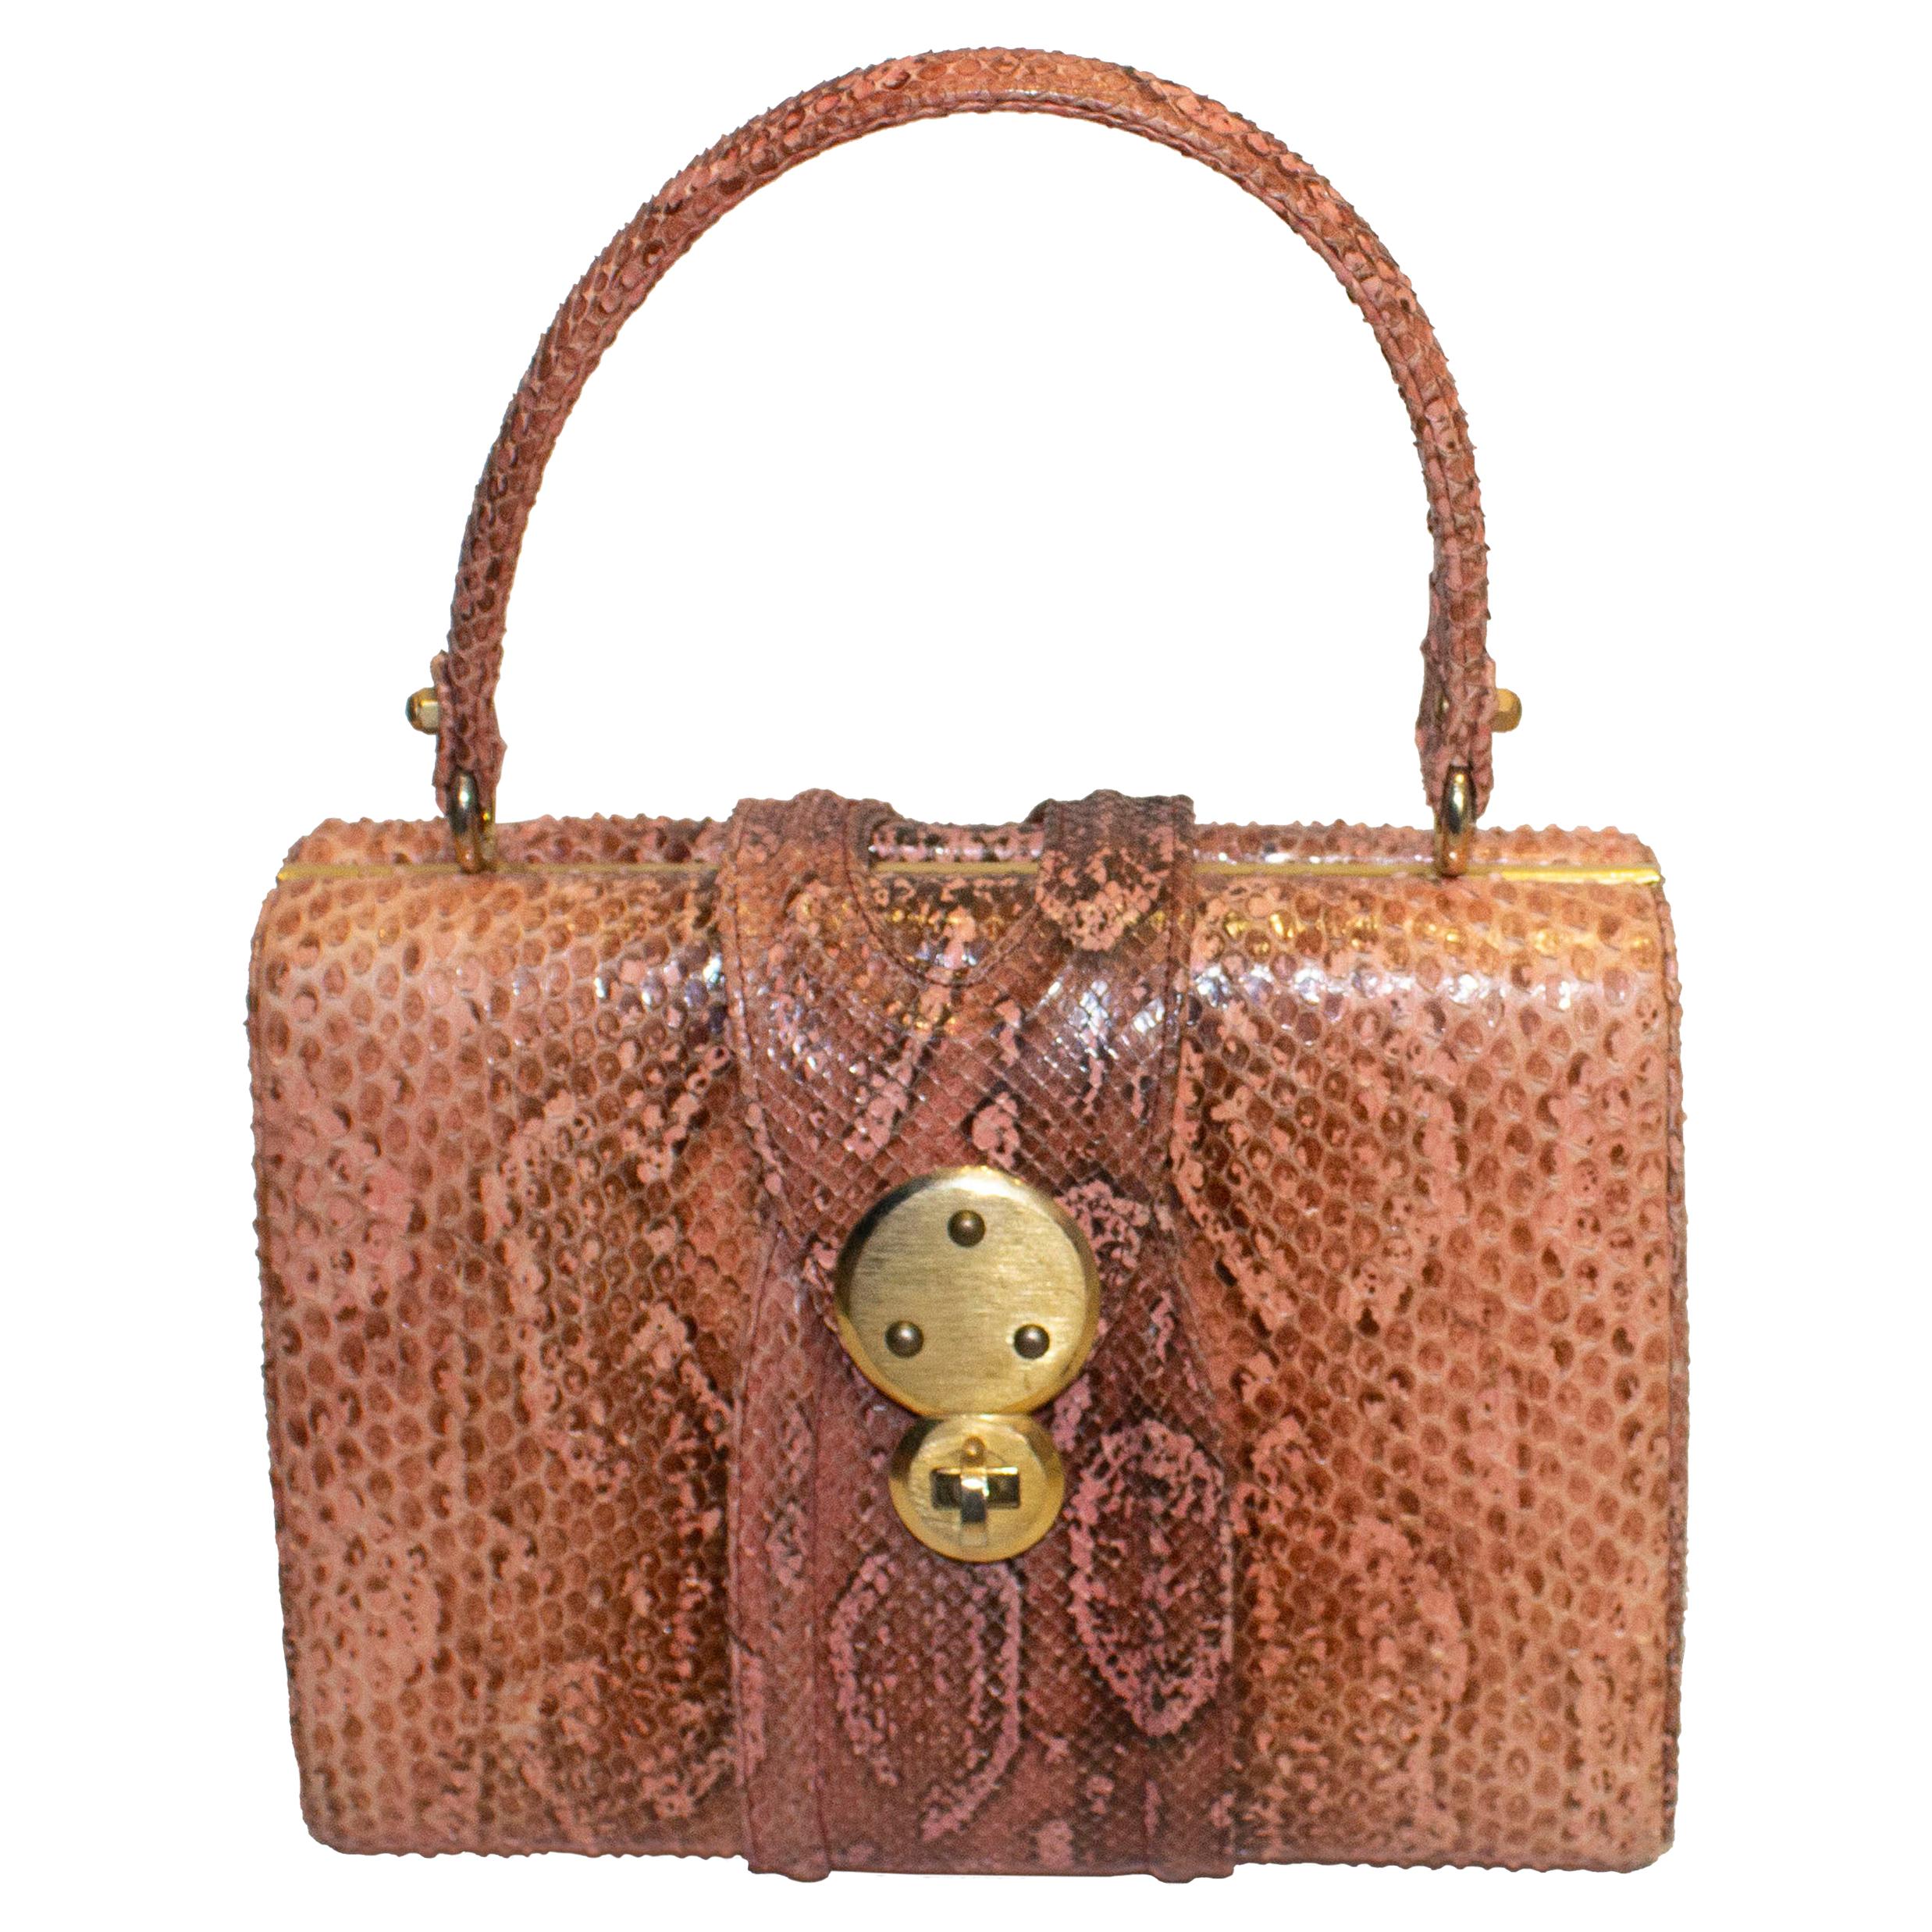 Vintage Pink Snakeskin Top Handle Handbag